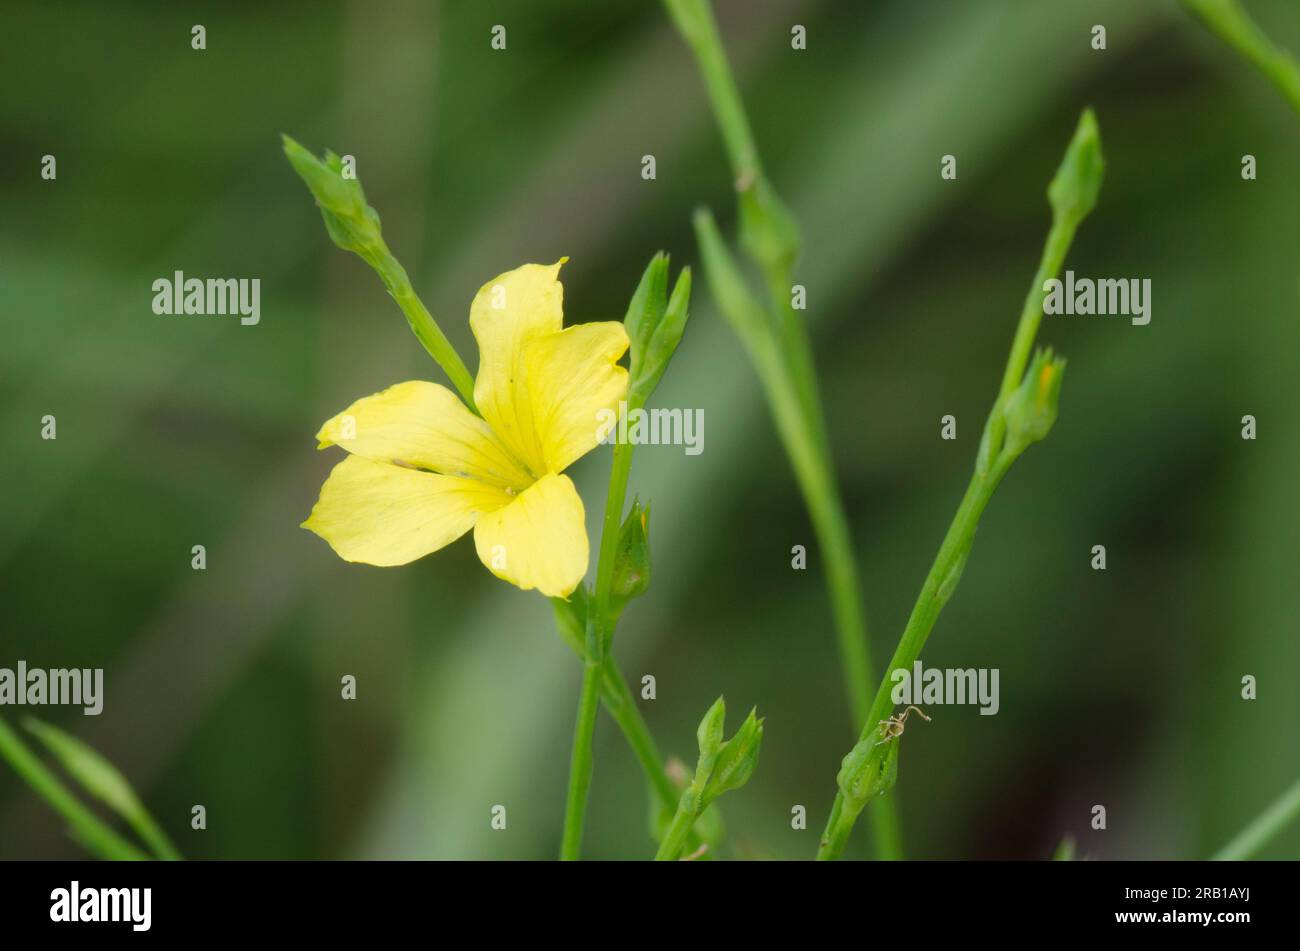 Flax amarillo ranurado, linum sulcatum Foto de stock